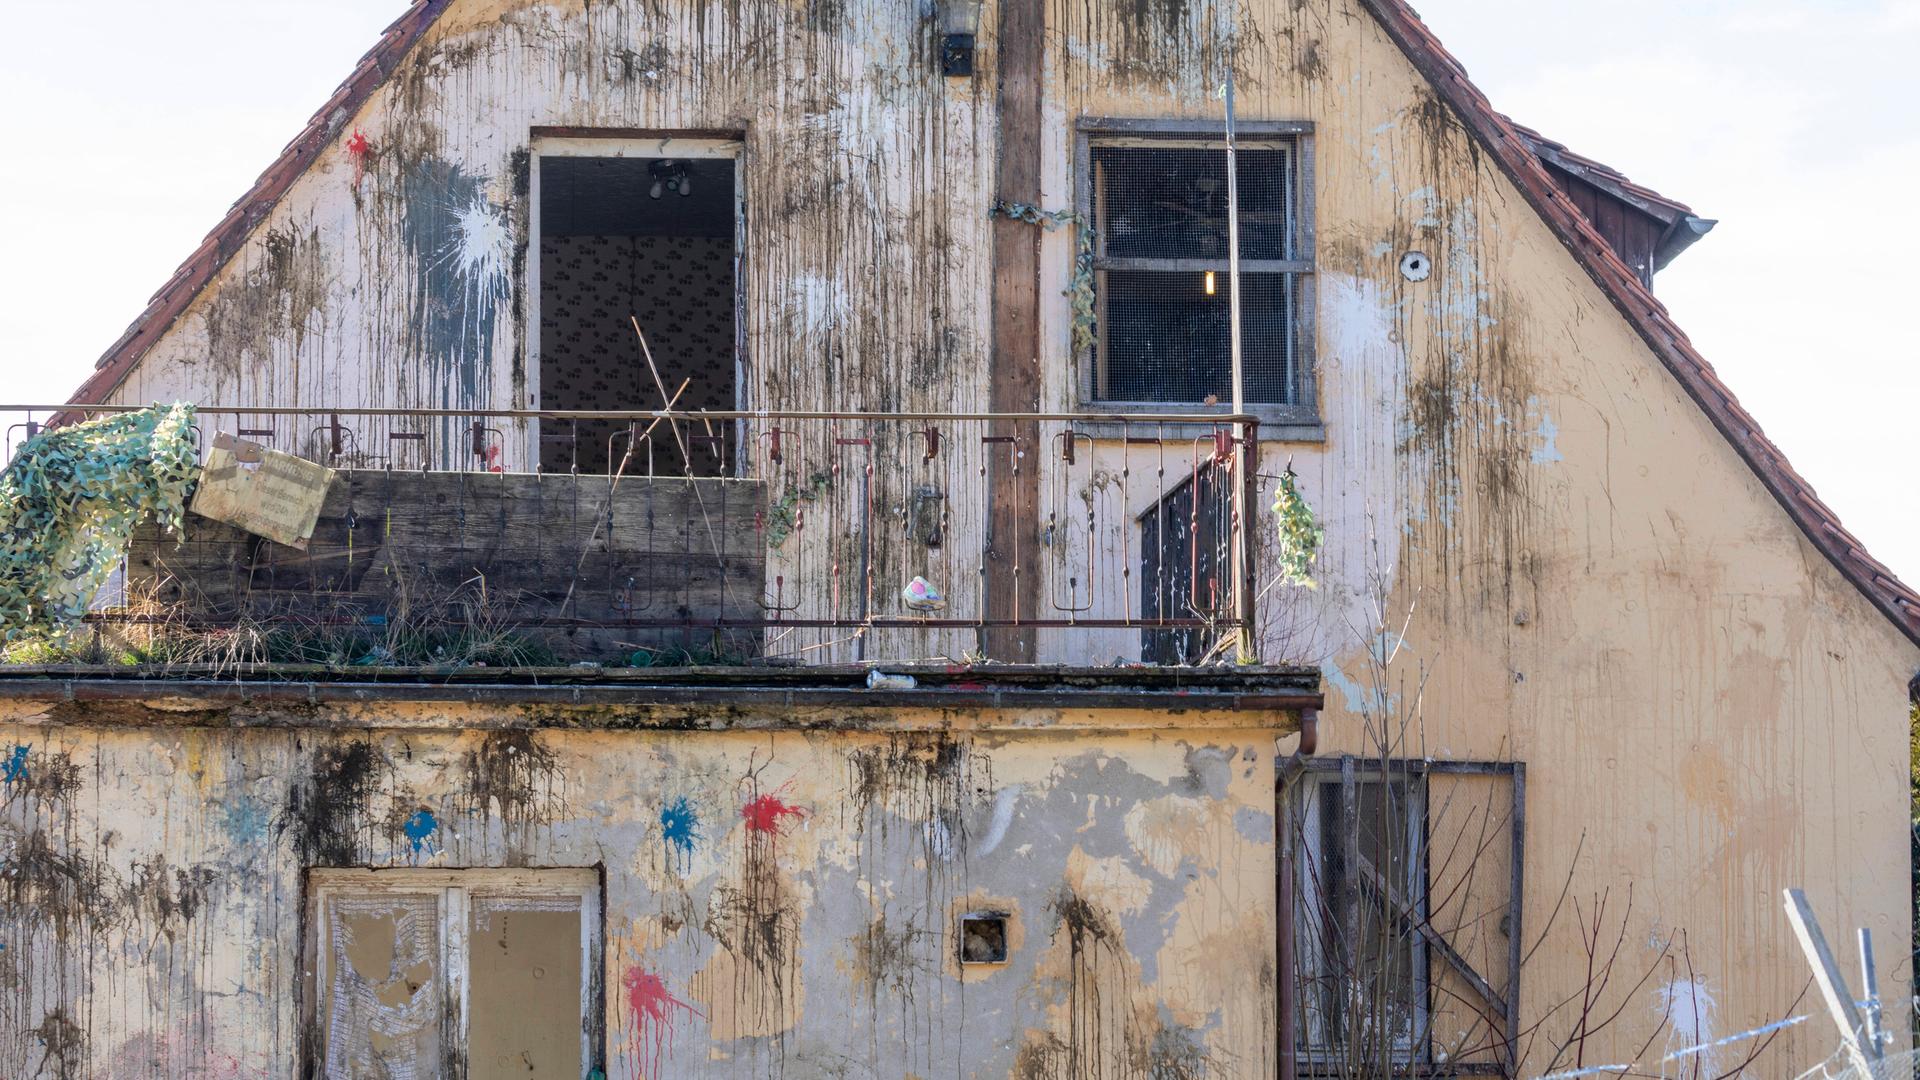 Frontalansicht der Fassade eines Hauses im desolaten Zustan, das mit zahlreichen Farbbeutel beworfen wurde.